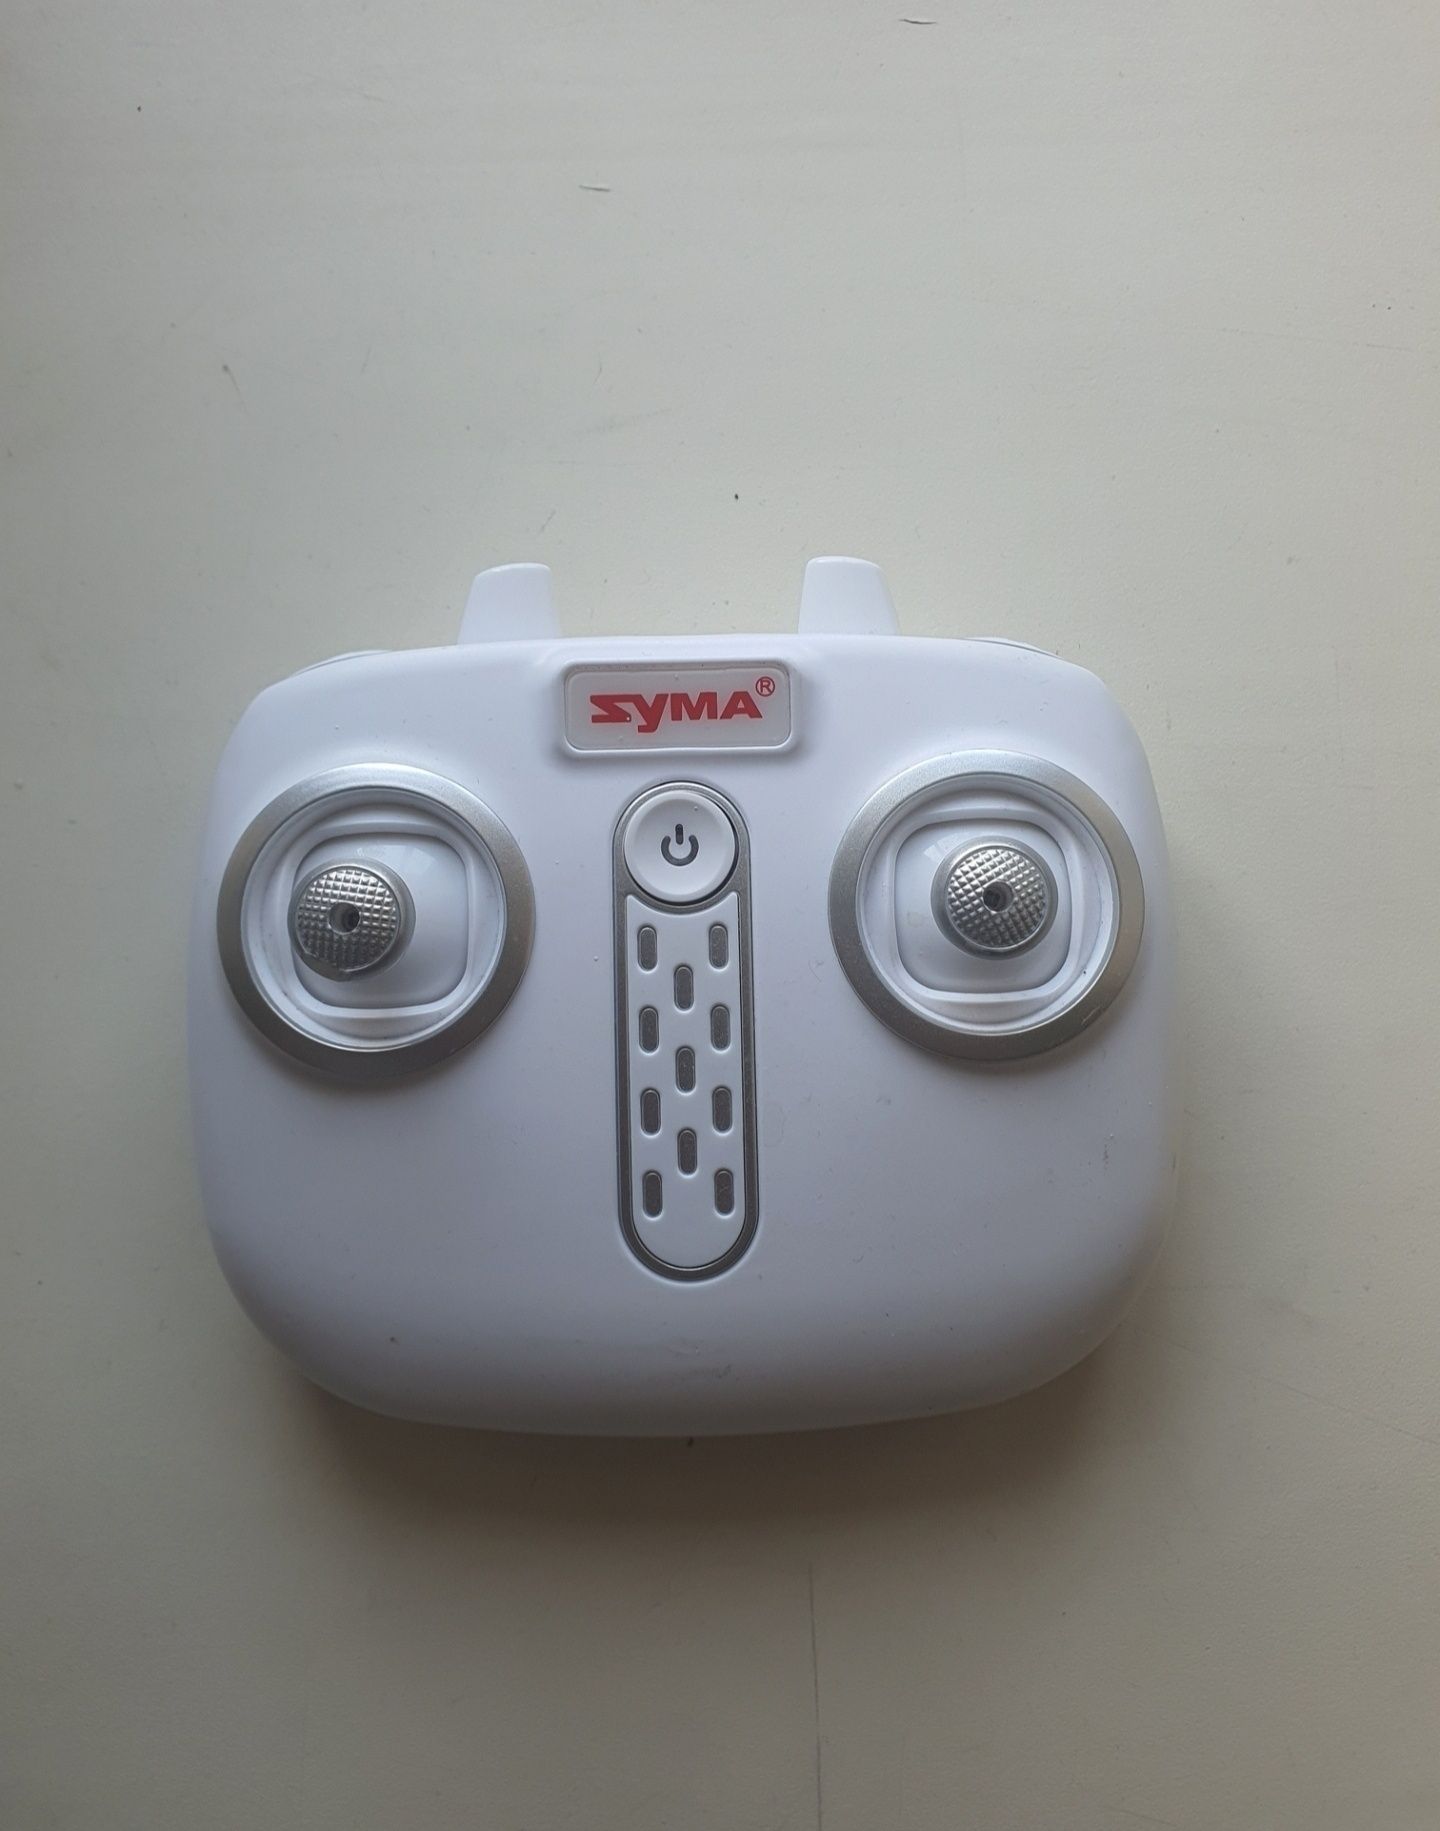 Zyma пульт управления для квадрокоптера FPV drone